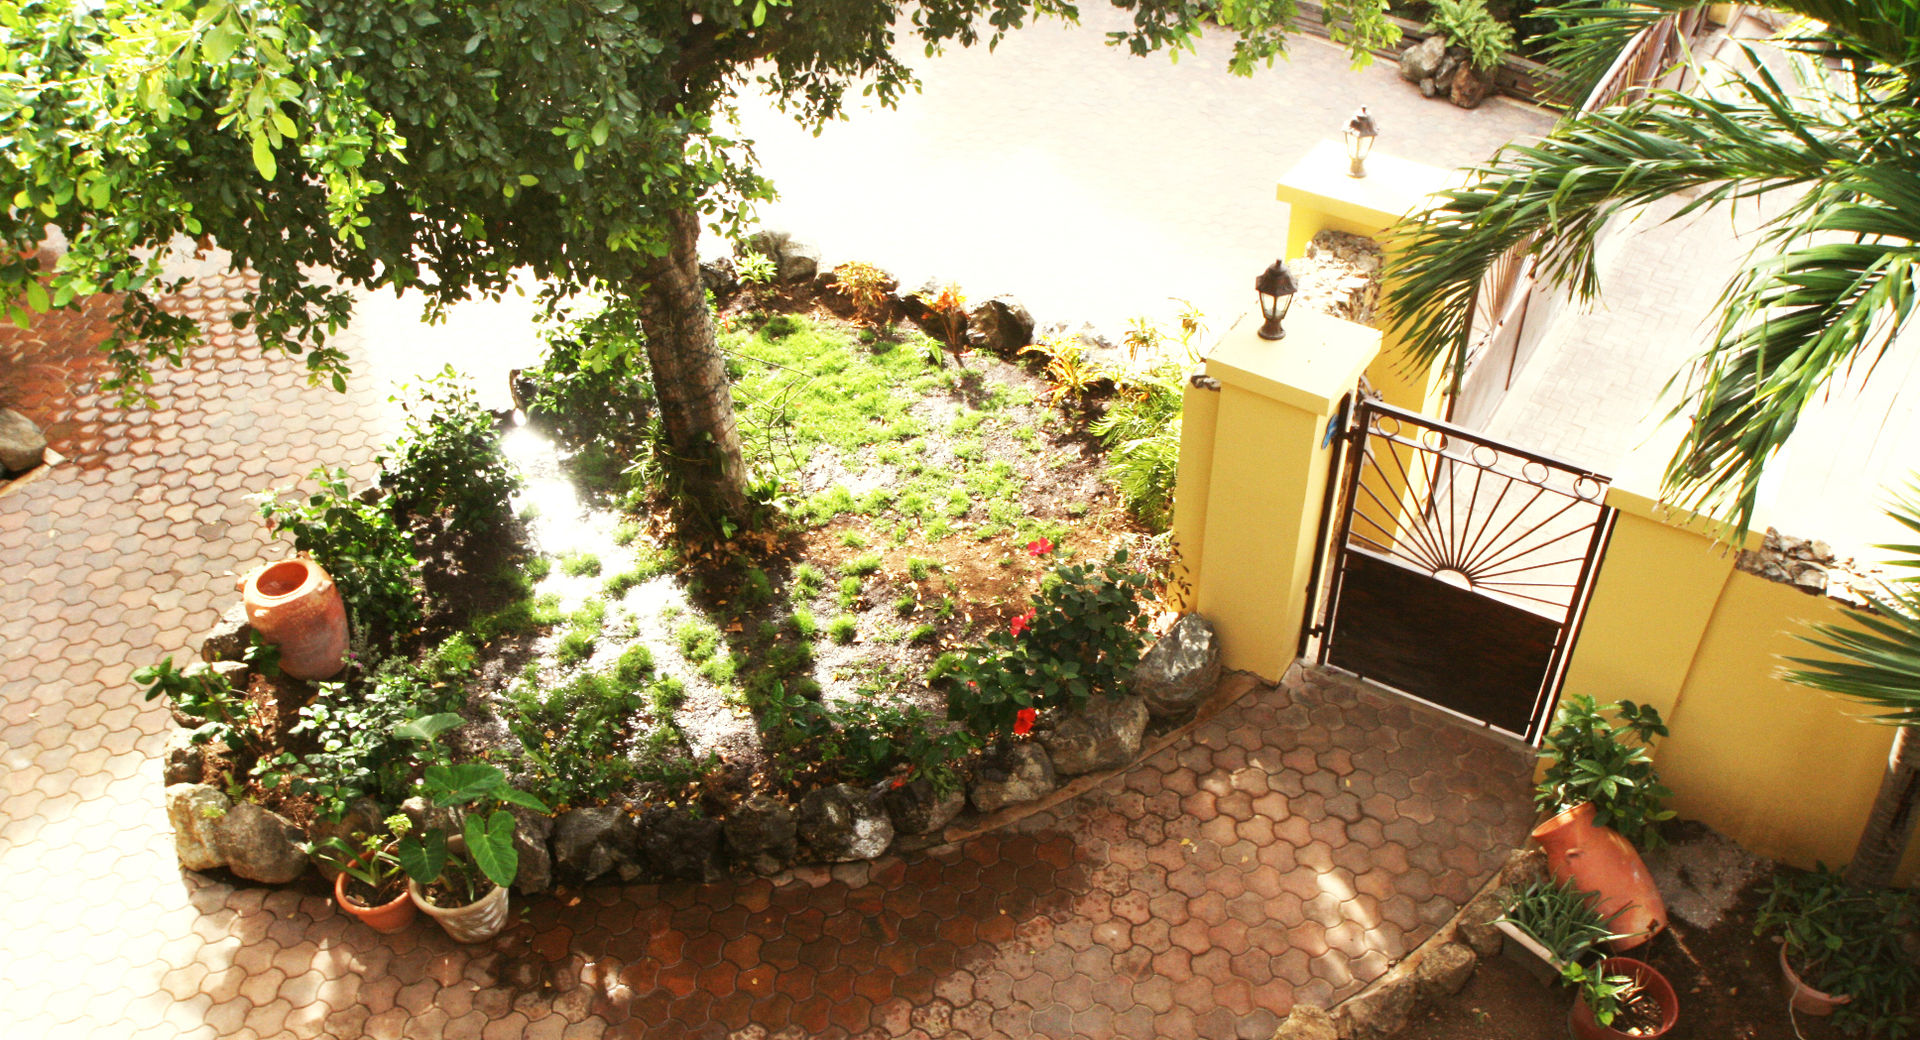 Casa Rokx, Willemstad Curaçao, architectenbureau Aerlant Cloin BNA architectenbureau Aerlant Cloin BNA Jardins tropicais